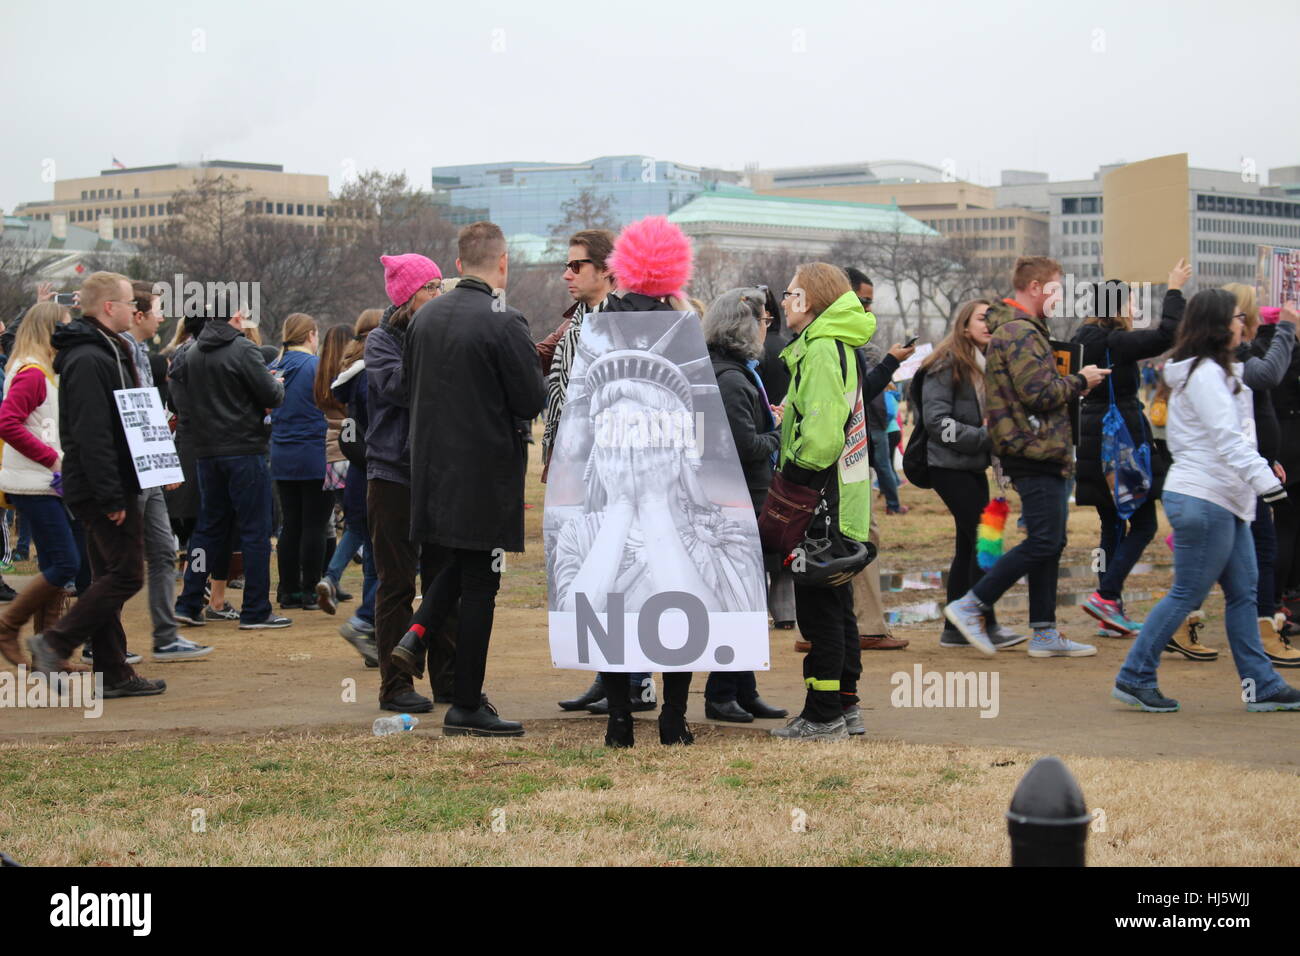 Distrito de Columbia, Estados Unidos. 21 ene, 2017. Una mujer lleva una capa con una imagen de la Estatua de la libertad sosteniendo su rostro en sus manos, con el título 'No.'. Foto de stock